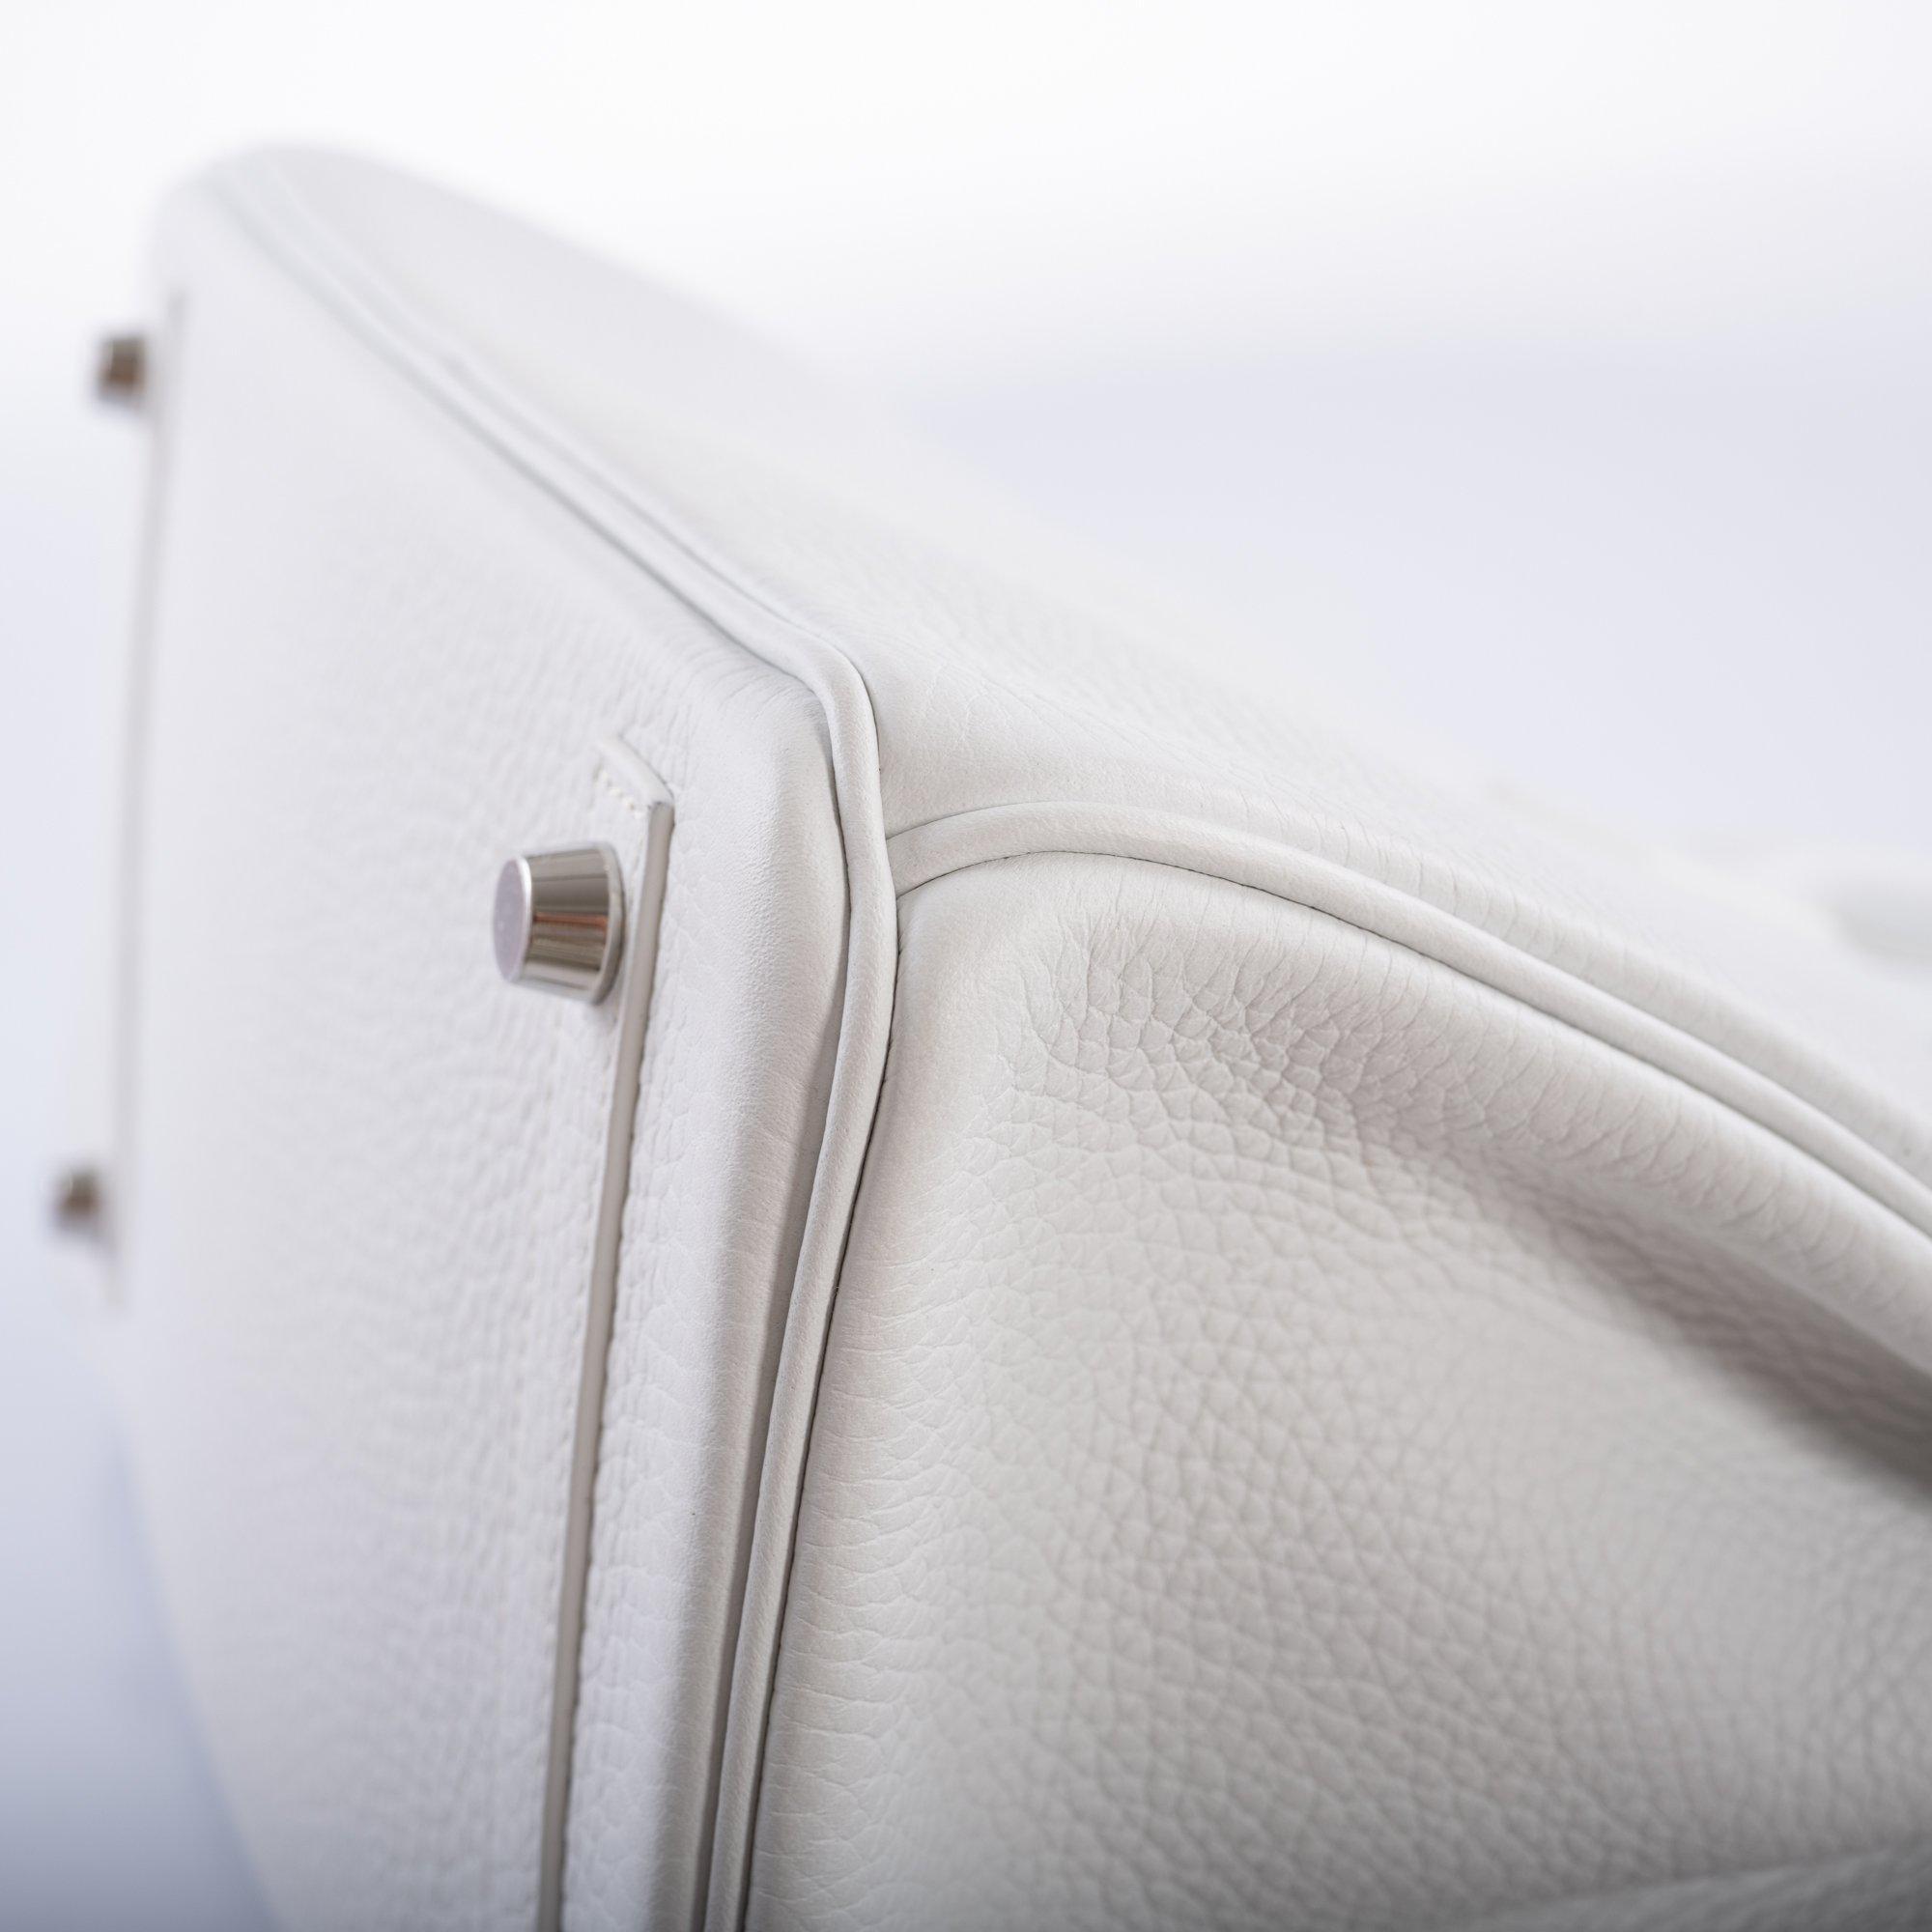 Hermès Birkin 30 White Clemence with Palladium Hardware - 2016, X